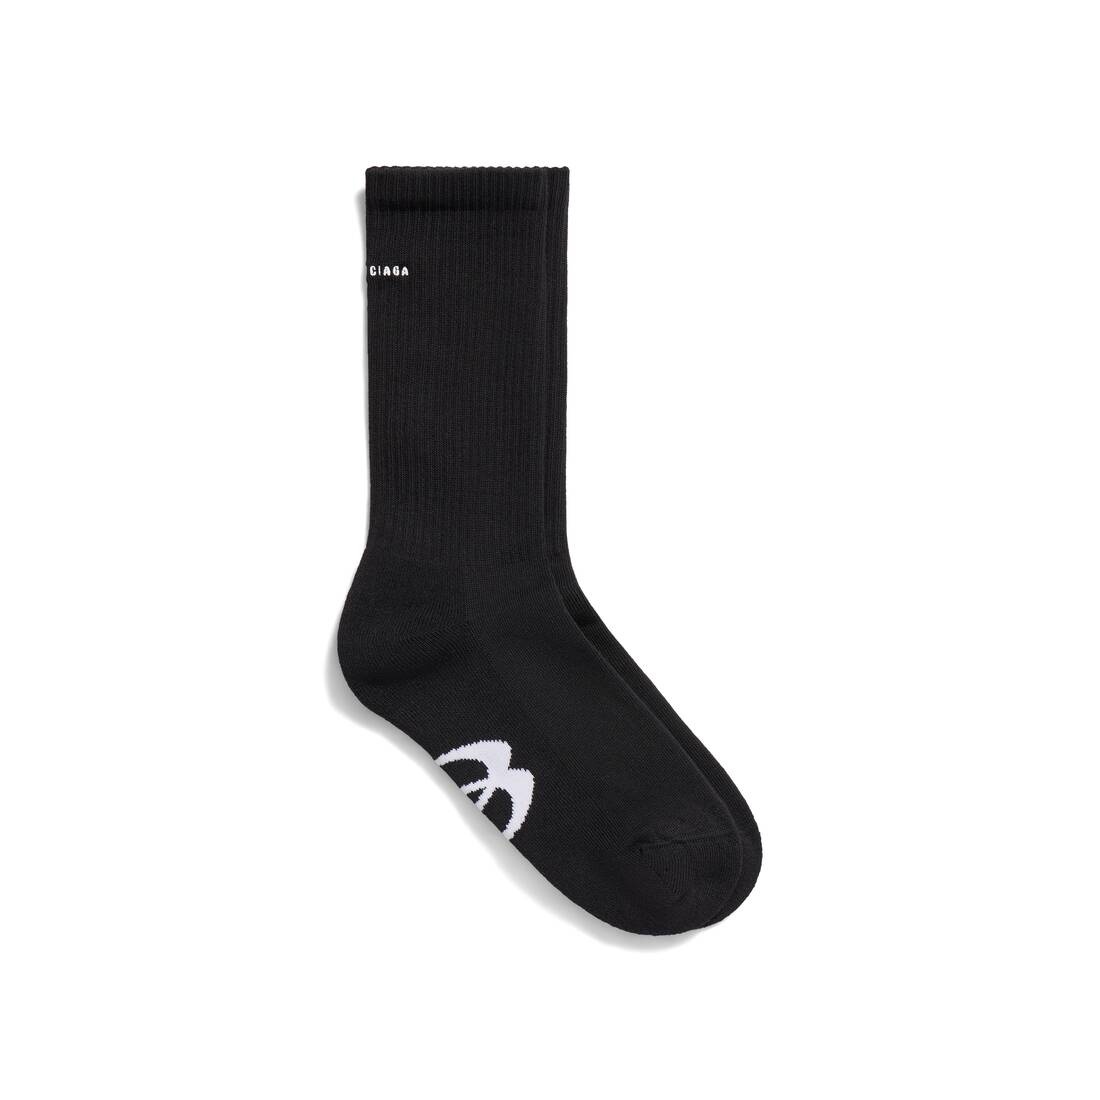 Men's Unity Sports Icon Socks in Black/white - 1